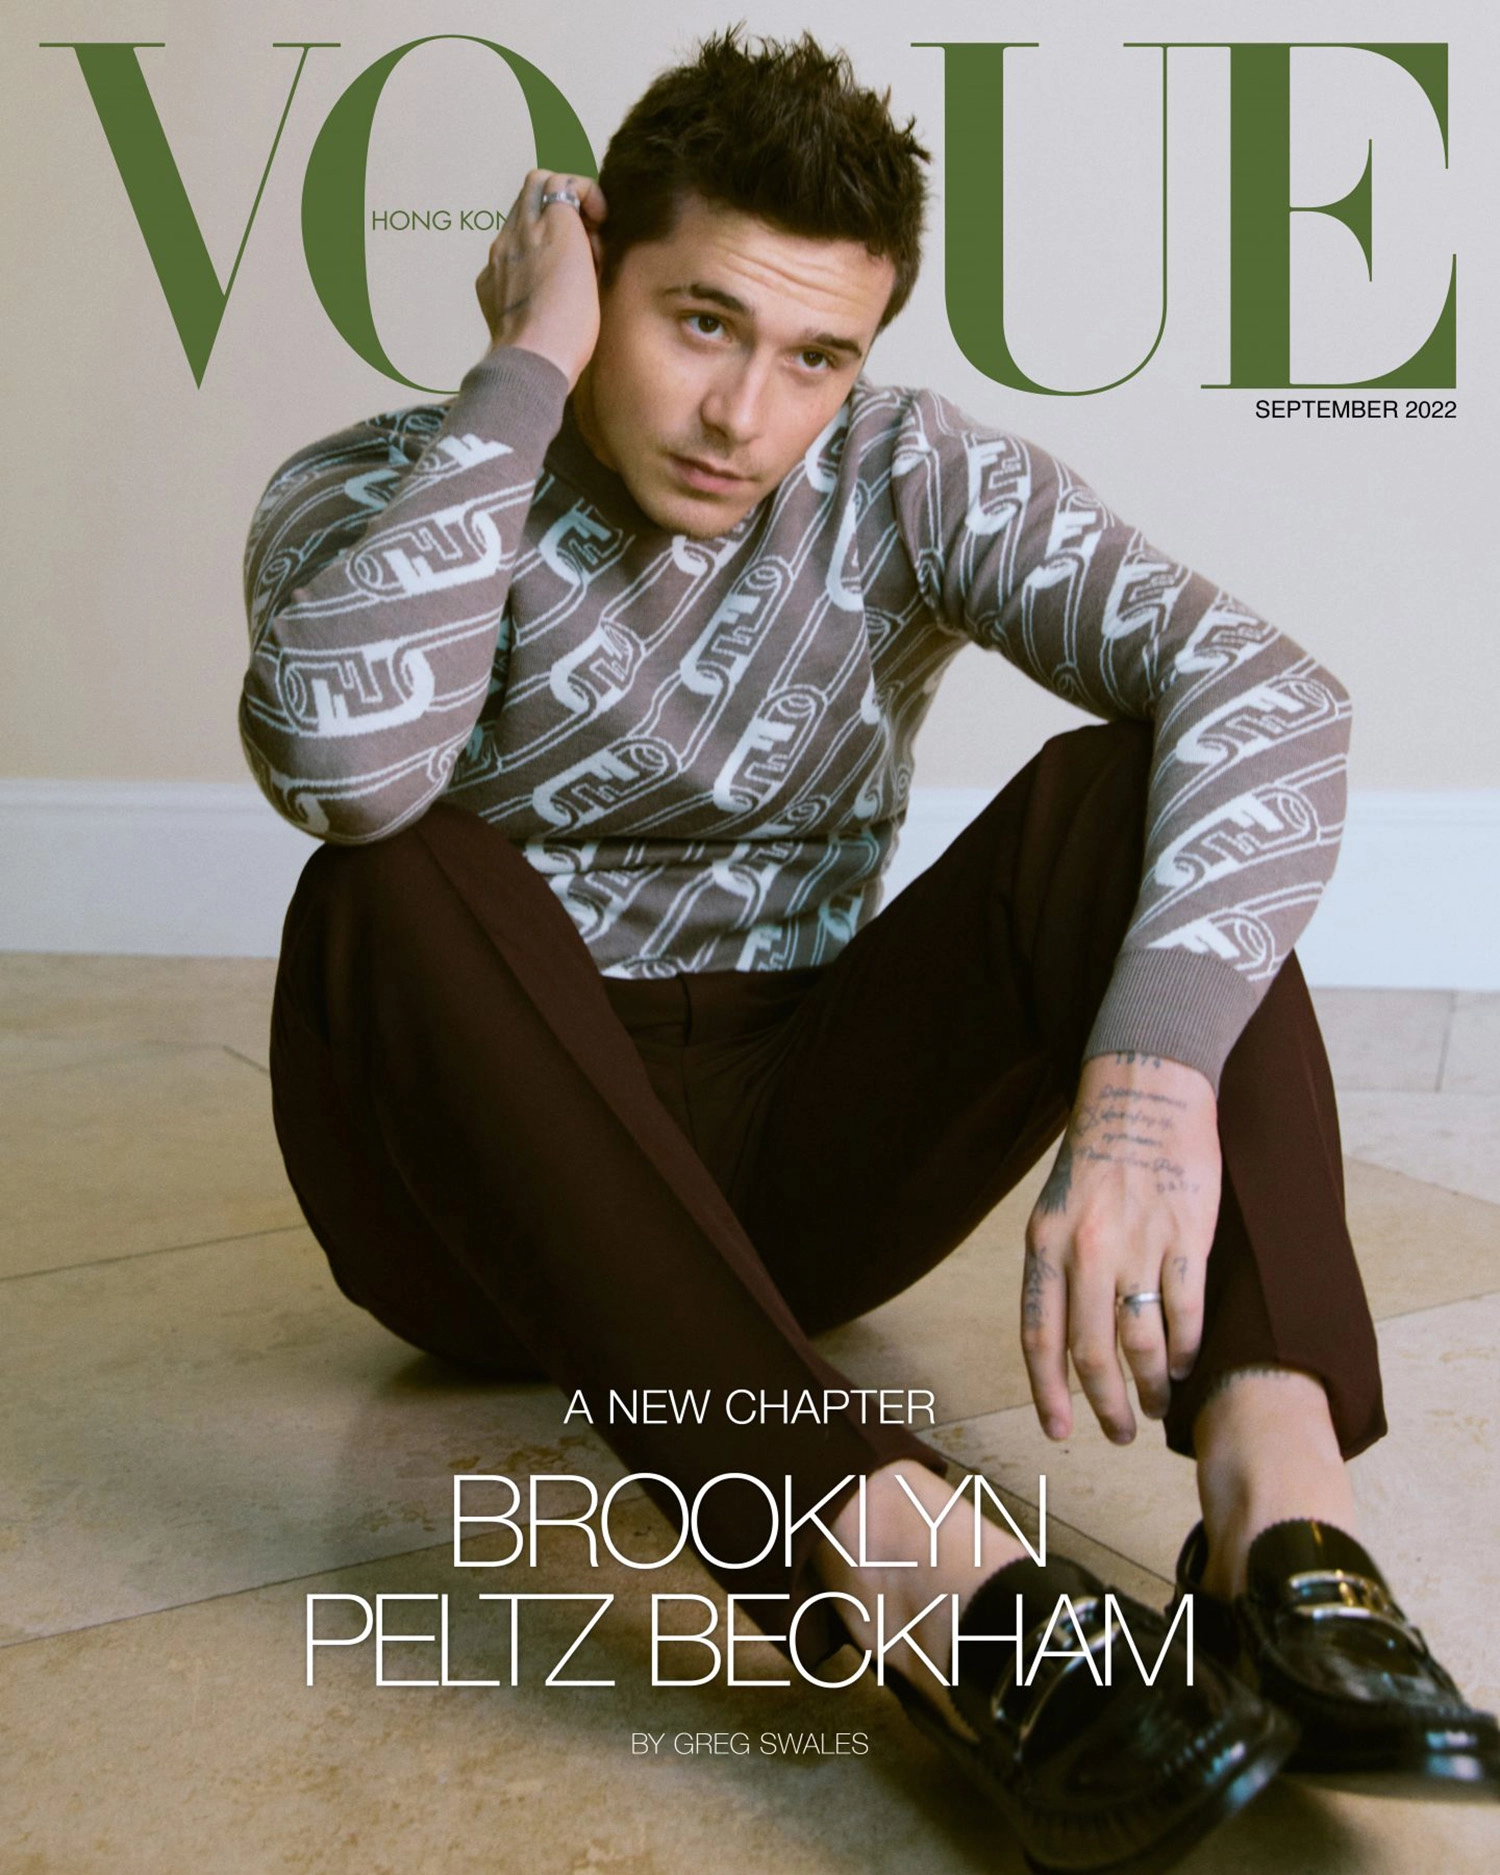 Brooklyn Beckham and Nicola Peltz Beckham cover Vogue Hong Kong September 2022 by Greg Swales